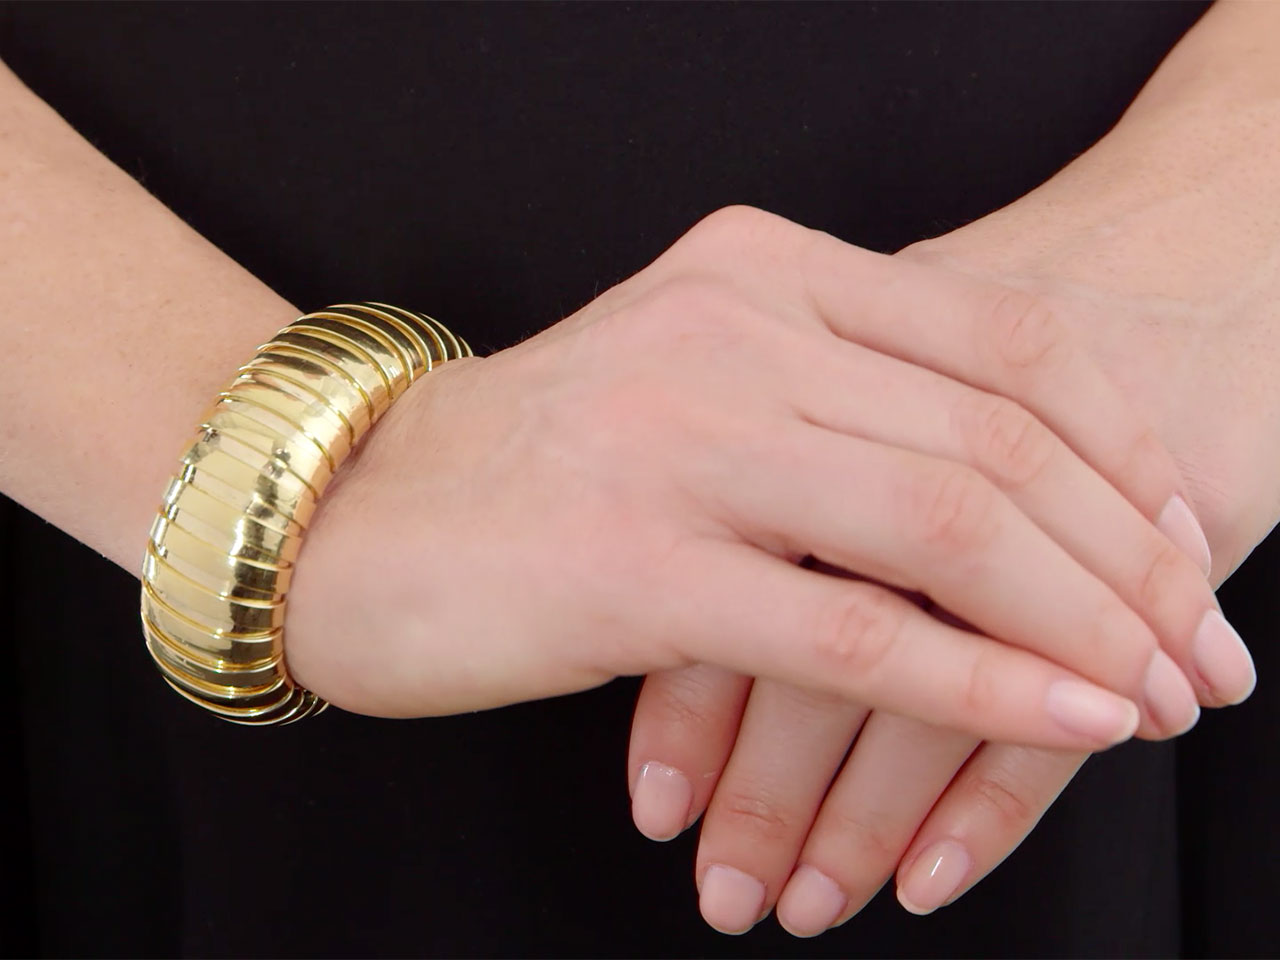 Wide Domed Cuff Bracelet in 18K Gold, by Beladora